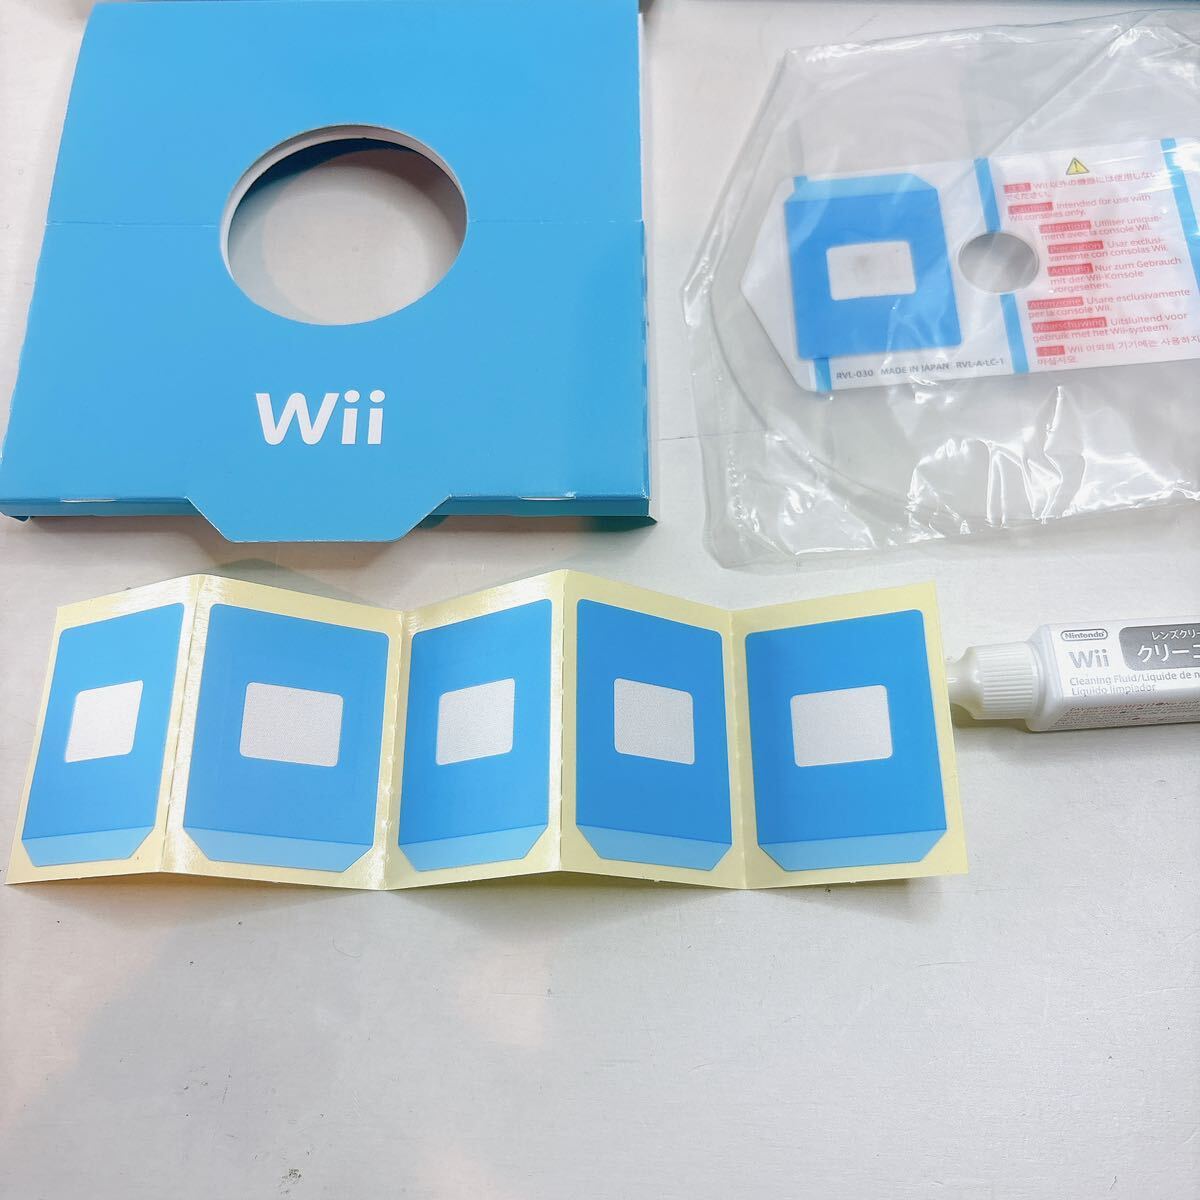 y0405【完品】Wii レンズクリーナーセット Nintendo 純正 RVL-030 任天堂 RVL-031 RVL-032